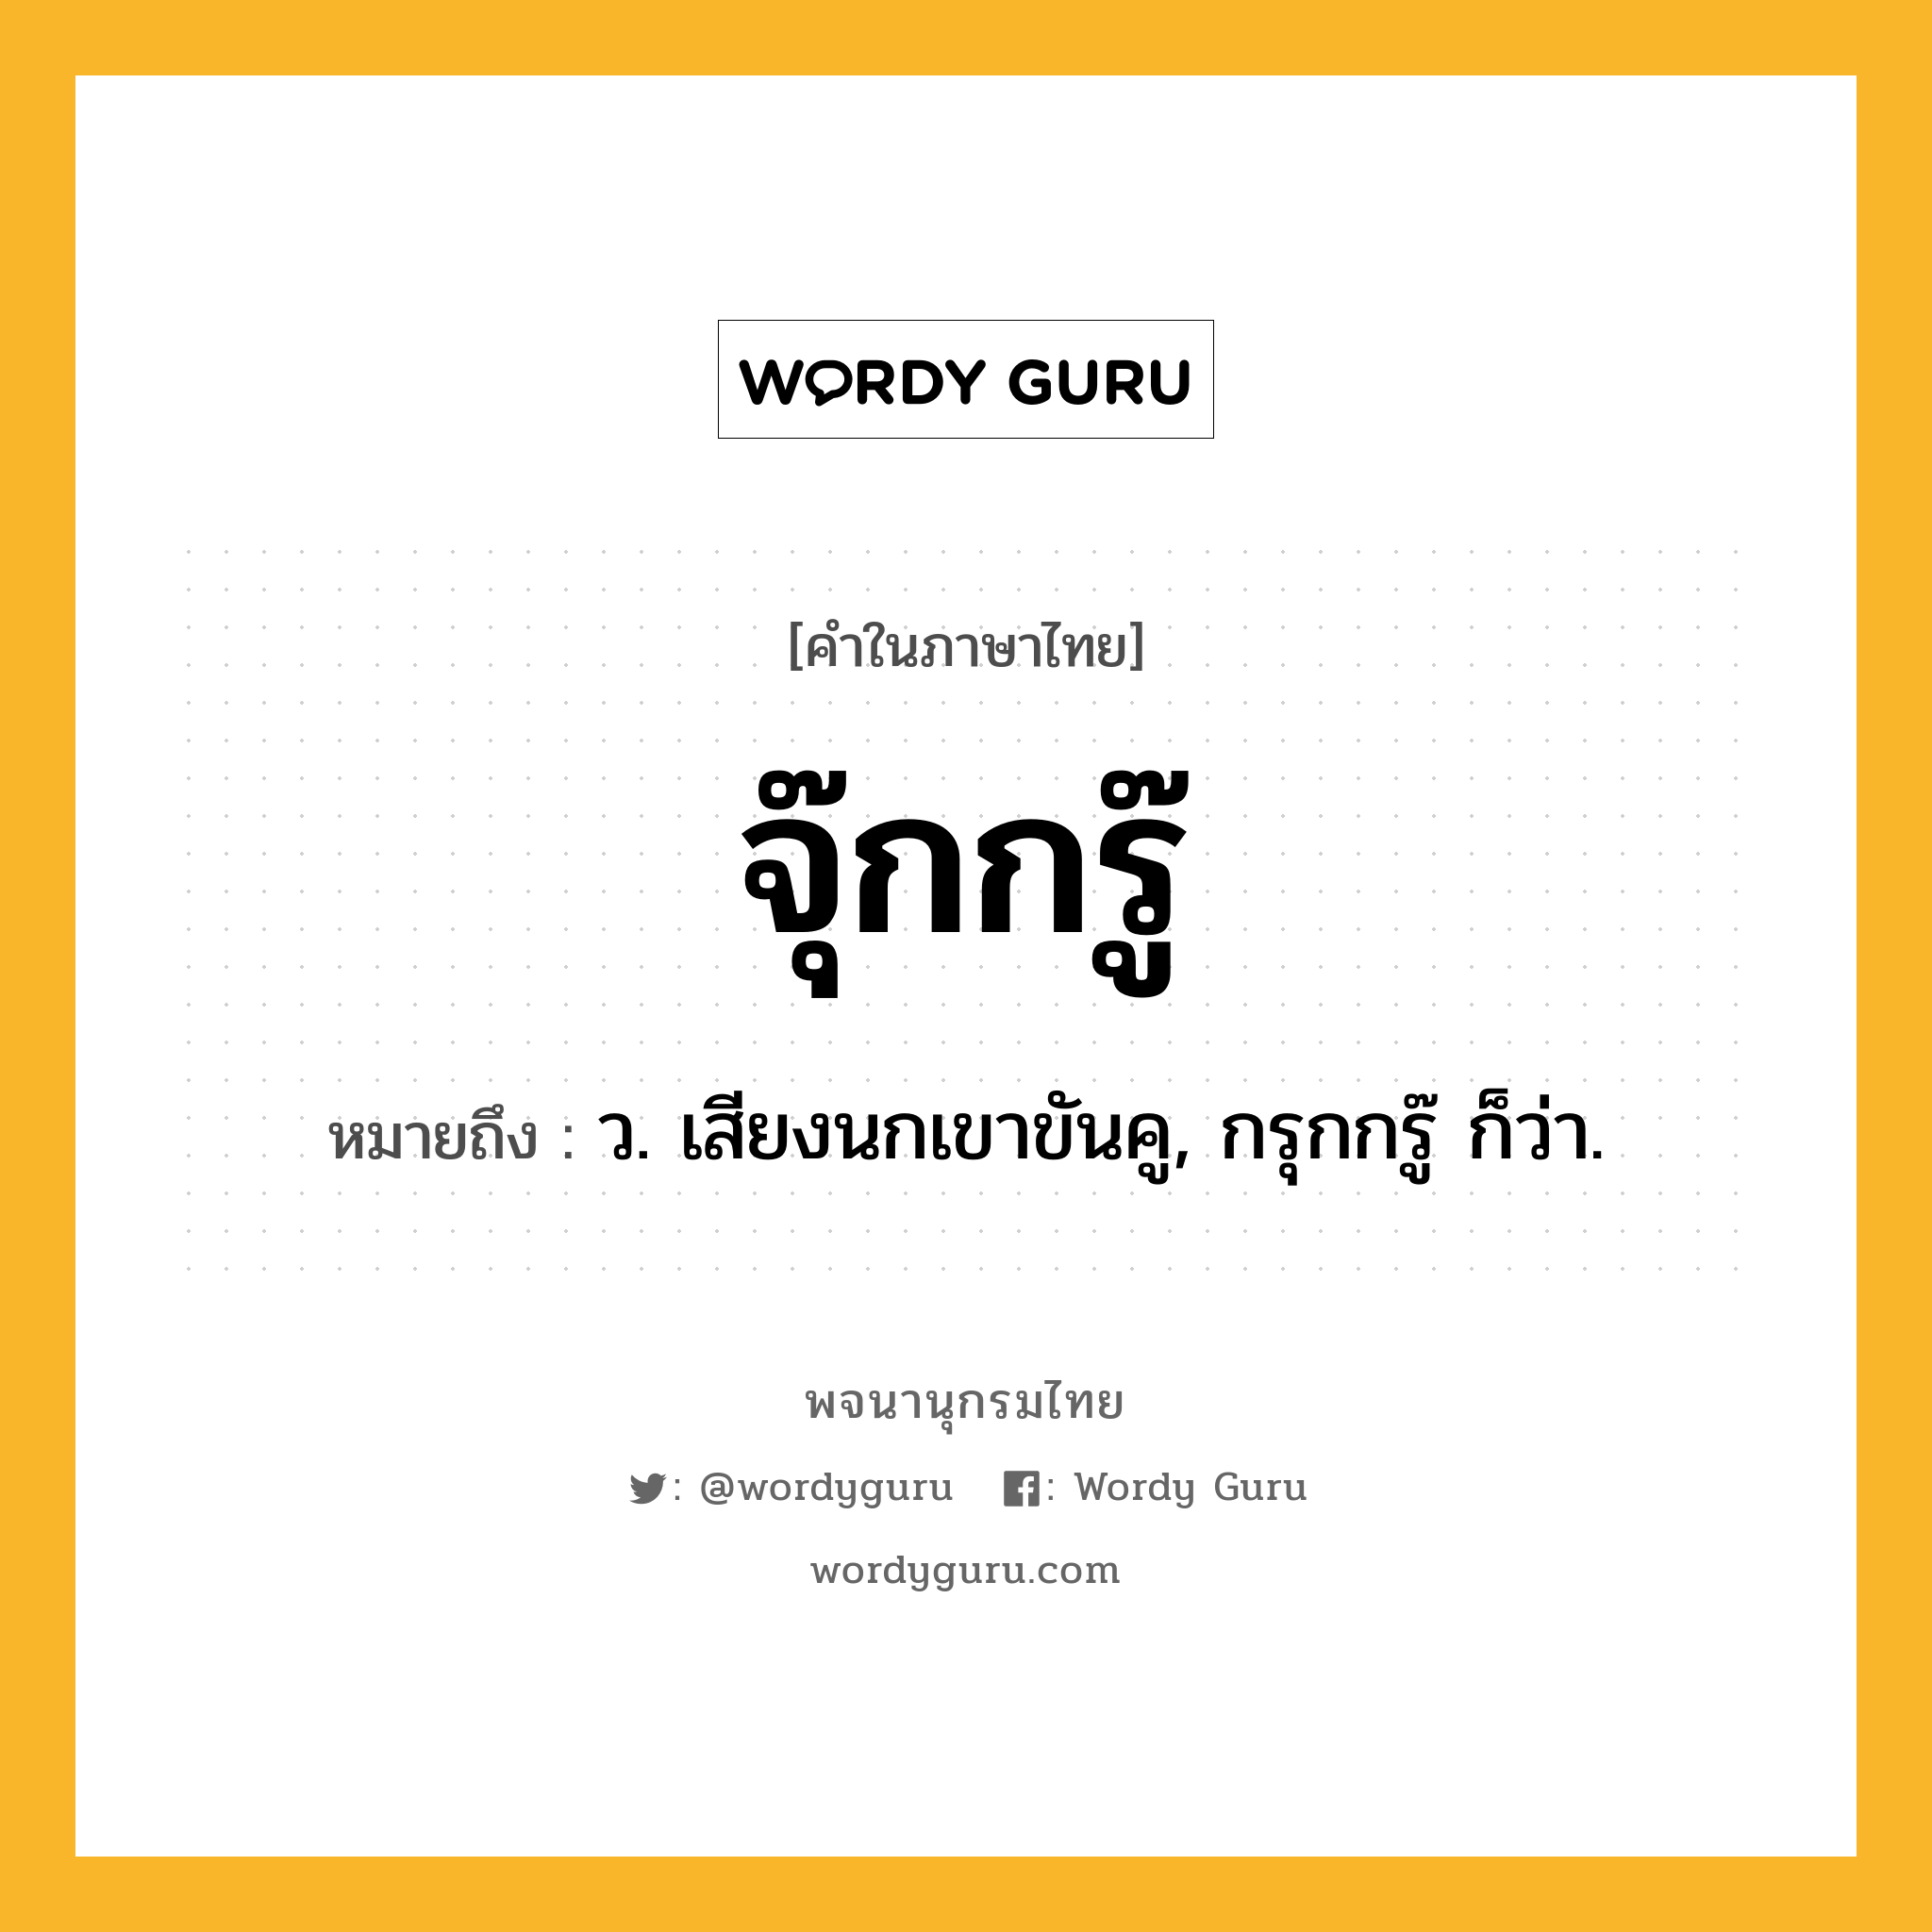 จุ๊กกรู๊ หมายถึงอะไร?, คำในภาษาไทย จุ๊กกรู๊ หมายถึง ว. เสียงนกเขาขันคู, กรุกกรู๊ ก็ว่า.